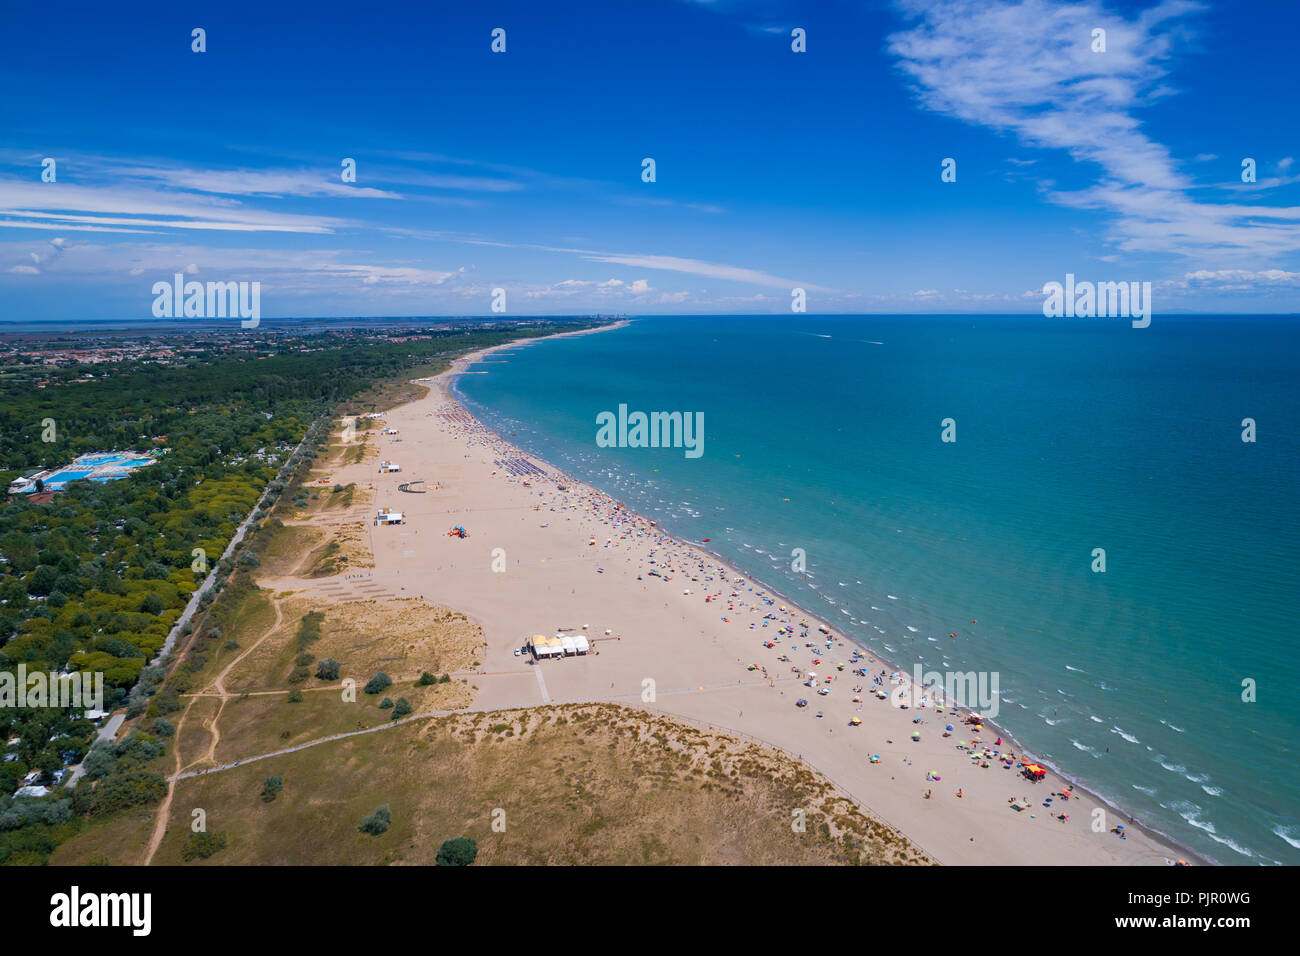 Italien, der Strand der Adria. Urlaub am Meer in der Nähe von Venedig. Antenne FPV drone Fotografie. Stockfoto